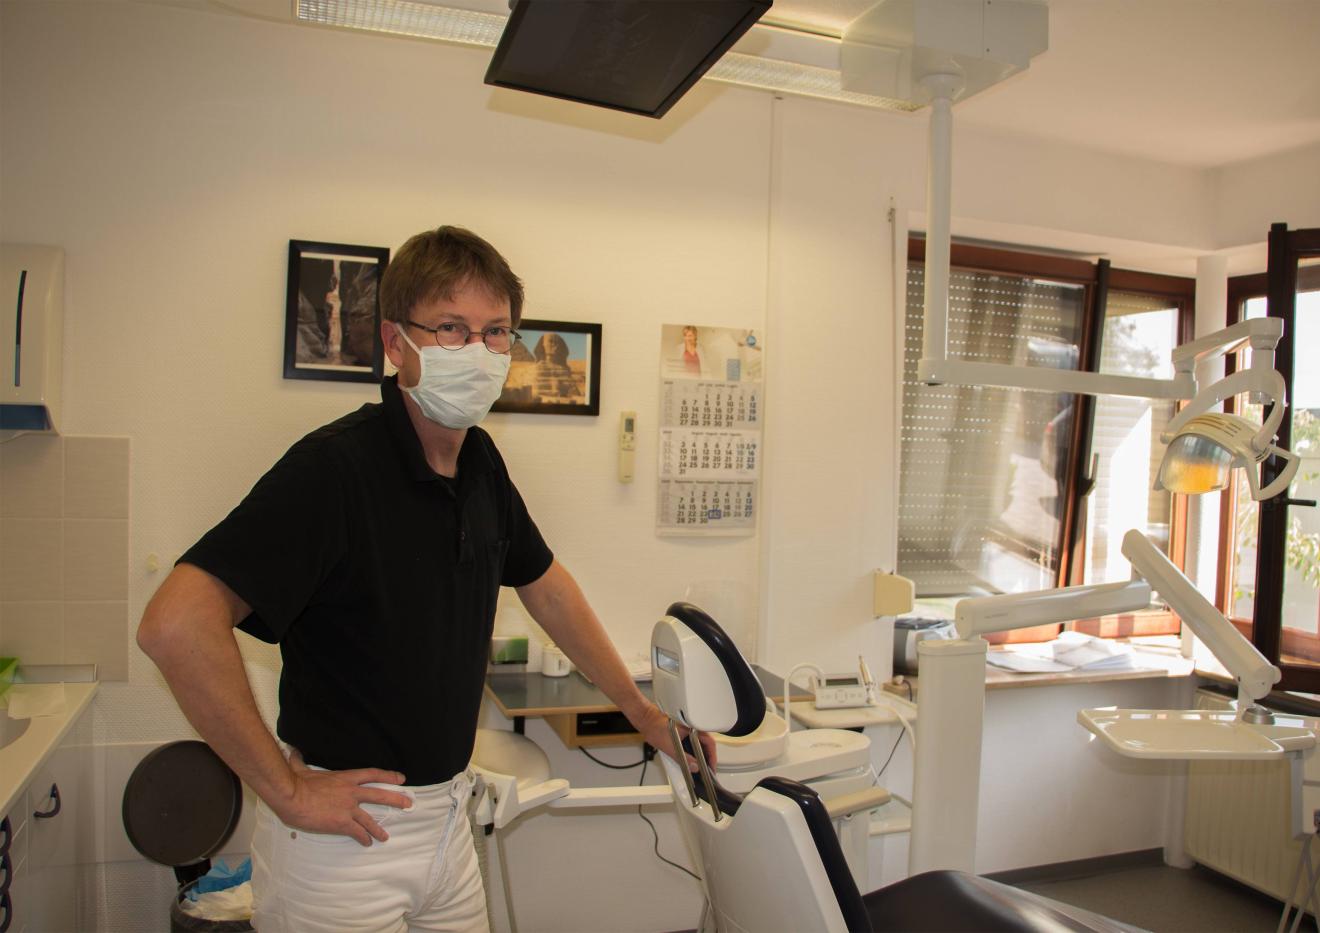  Zahnarzt Ulf Krathge in seiner Praxis: „Die Kosten sind ziemlich explodiert“ Credit: Nils Bergmann